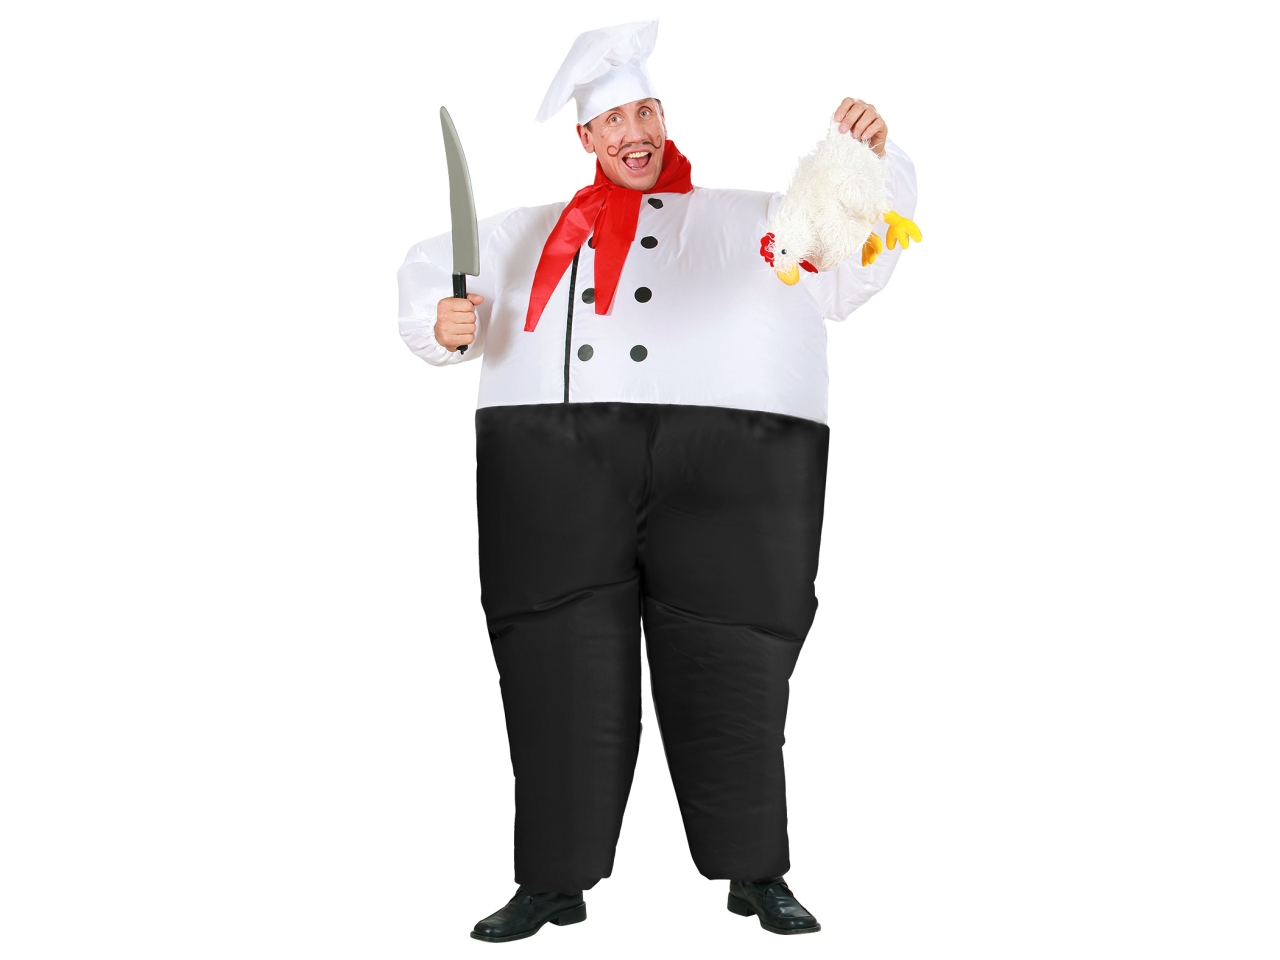 Costume da chef - il costume comprende costume gonfiabile con